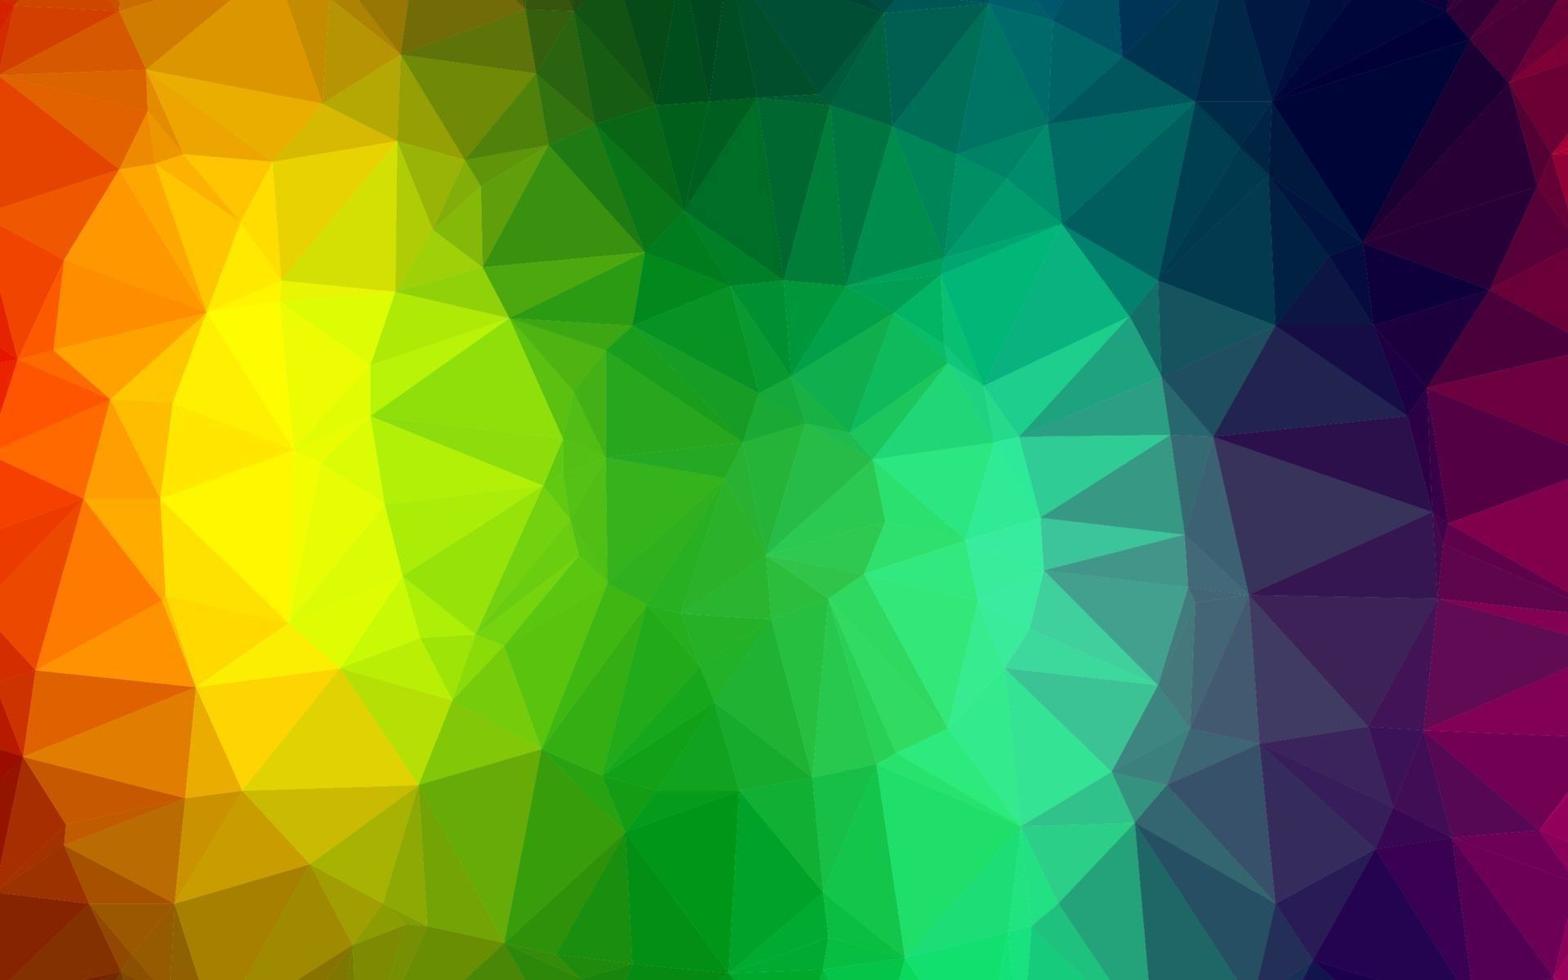 multicolor escuro, vetor de arco-íris brilhante modelo triangular.